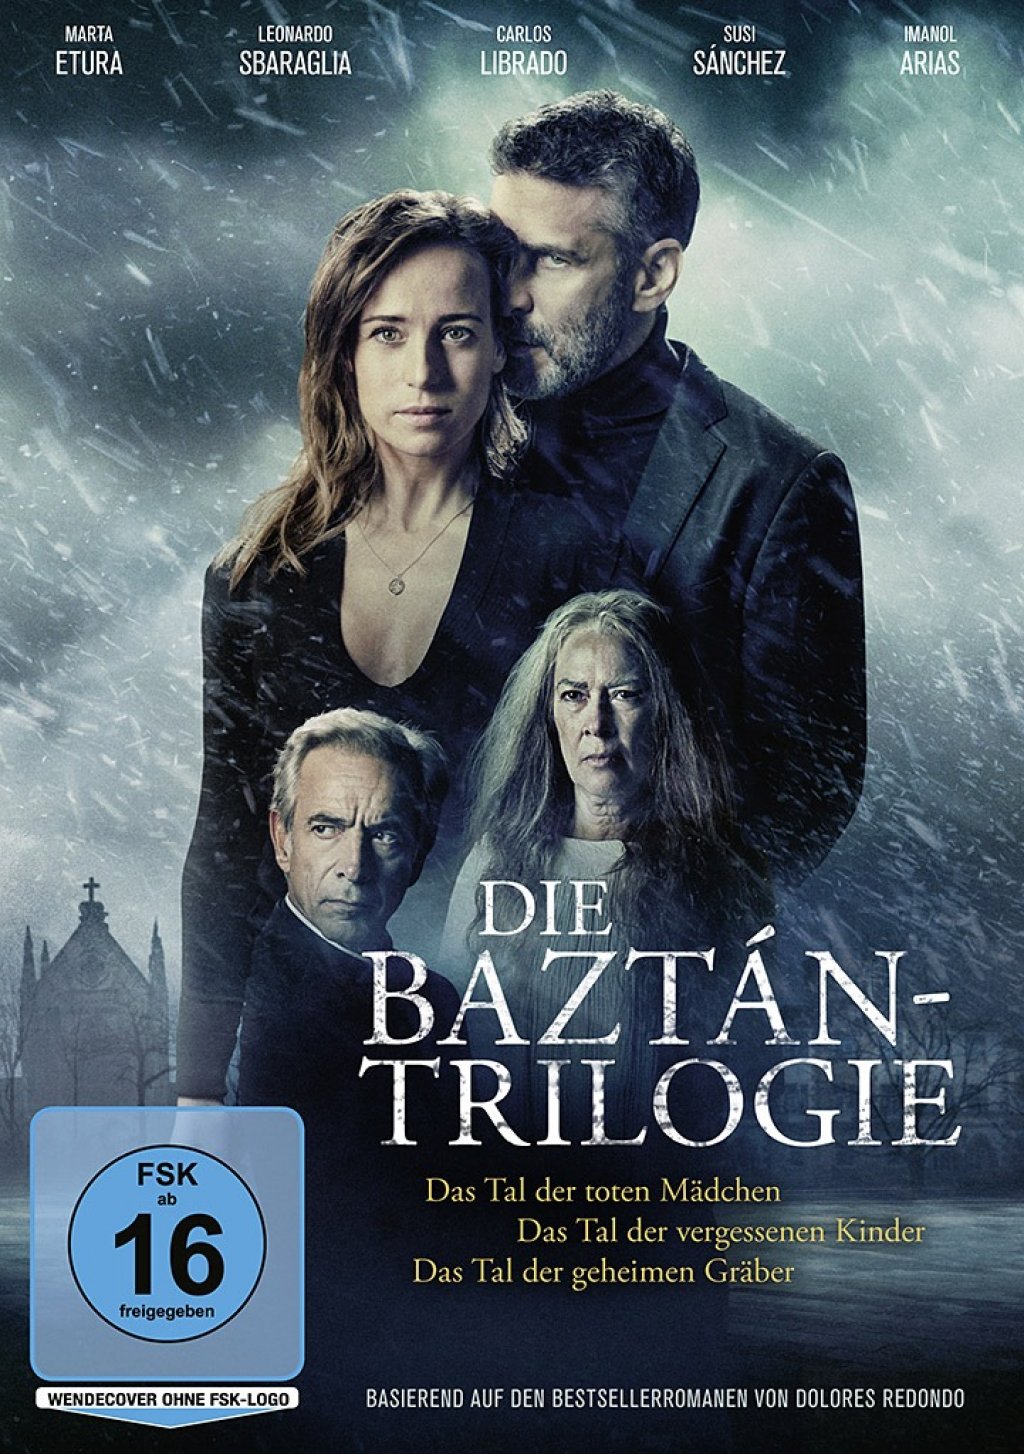 Trilogie Du Baztan Film 1 La Trilogie Du Baztan Film 1 | AUTOMASITES